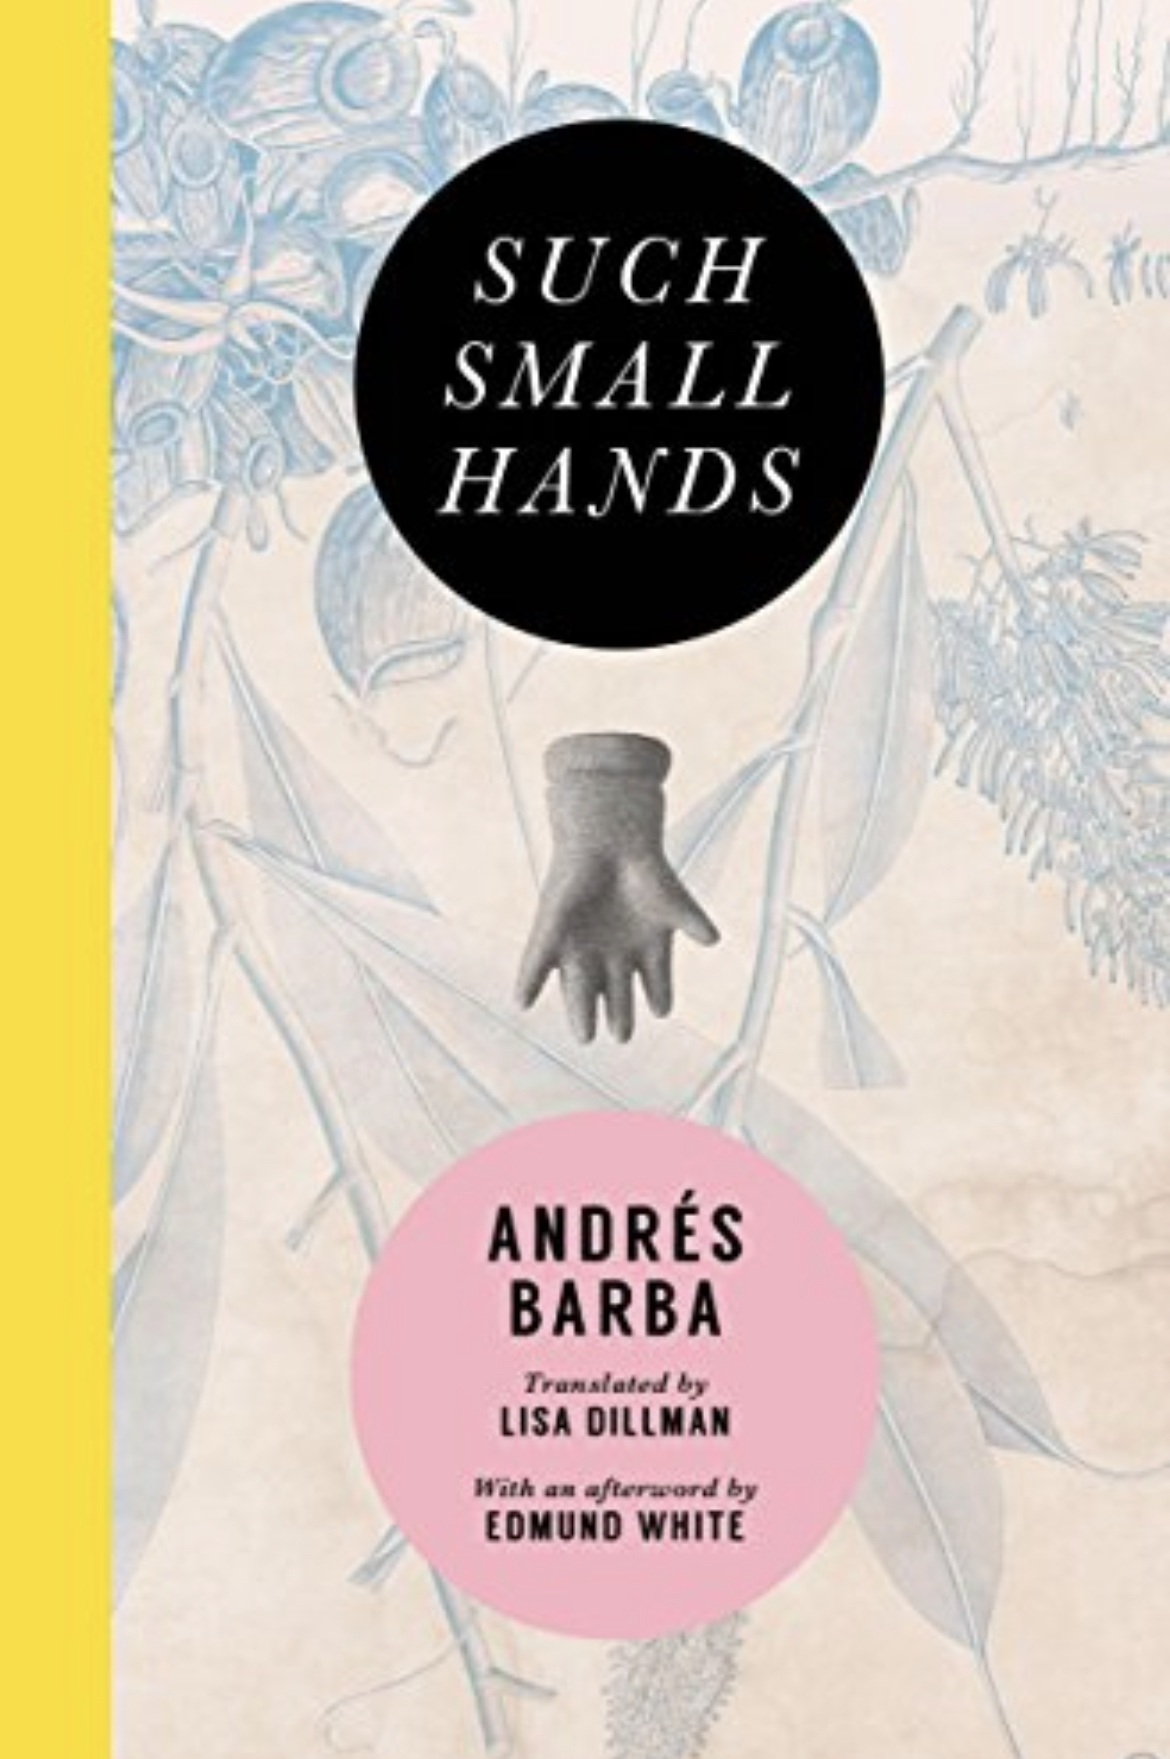 Andrés Barba, Andrés Barba: Such small hands (2017)